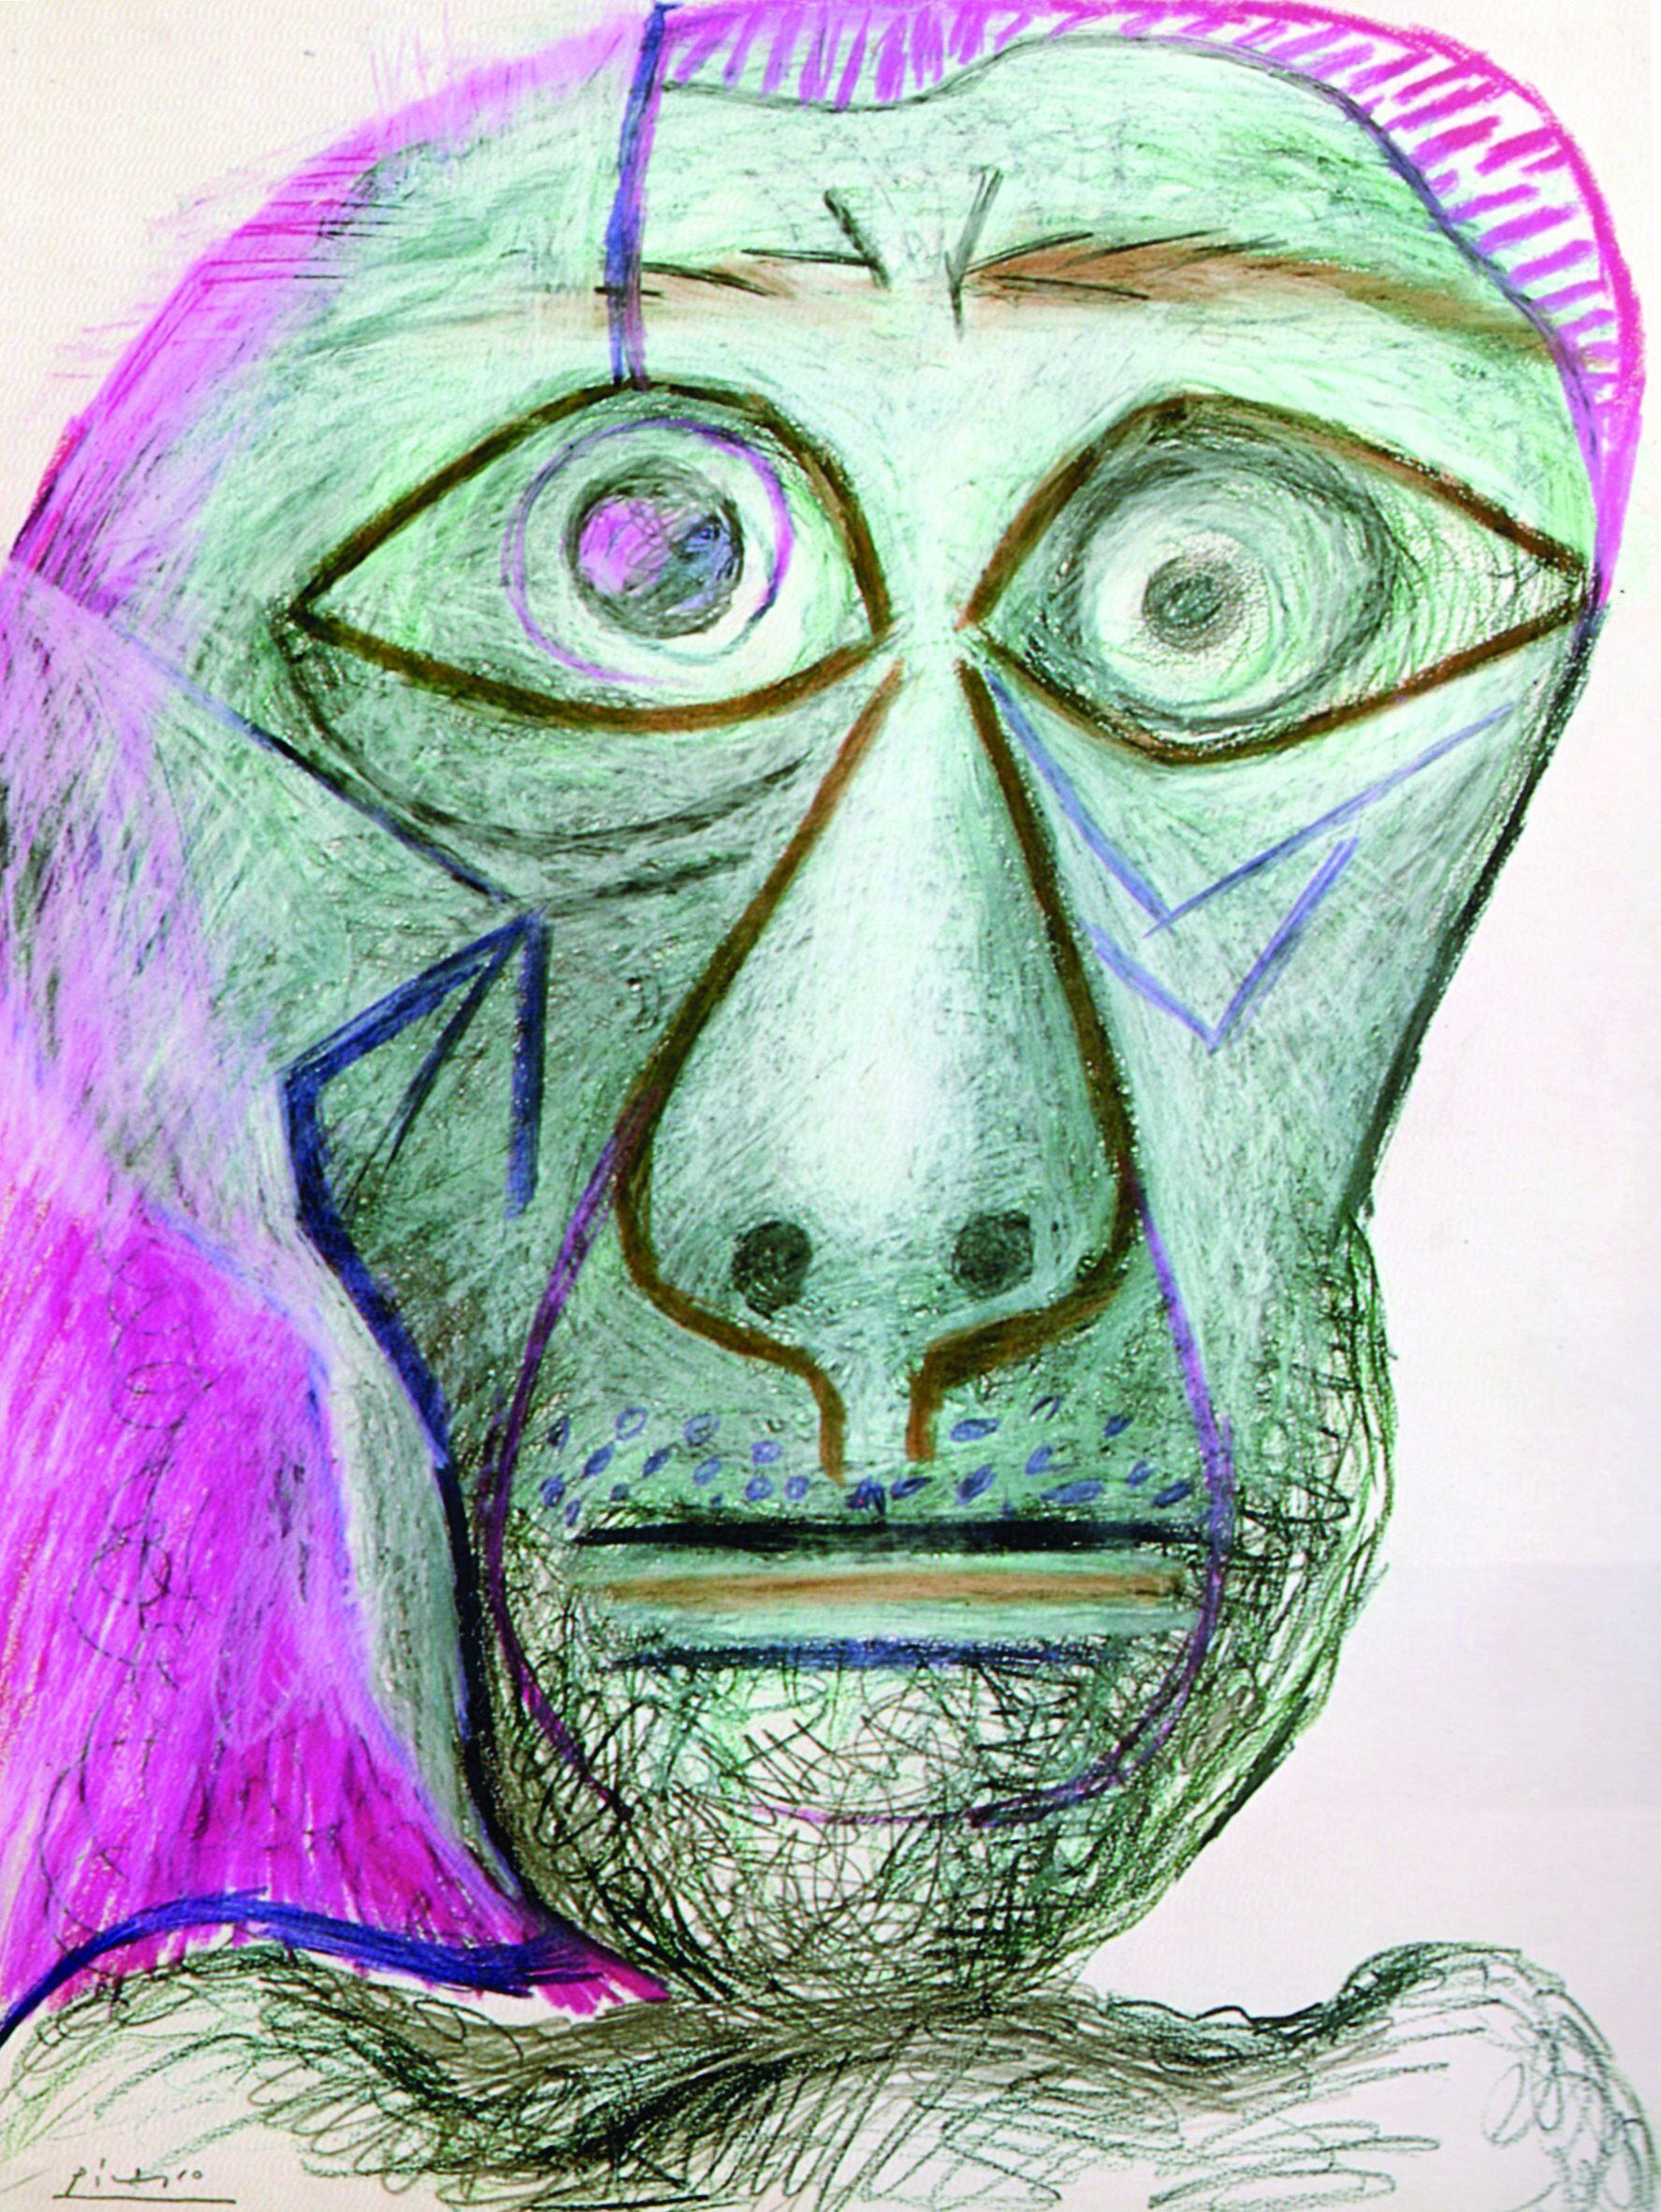 Autoretrat, de Picasso. 1972. 65 x 60 cm (colec·ció a Tokyo Fuji Television Gallery Co. Ltd.)